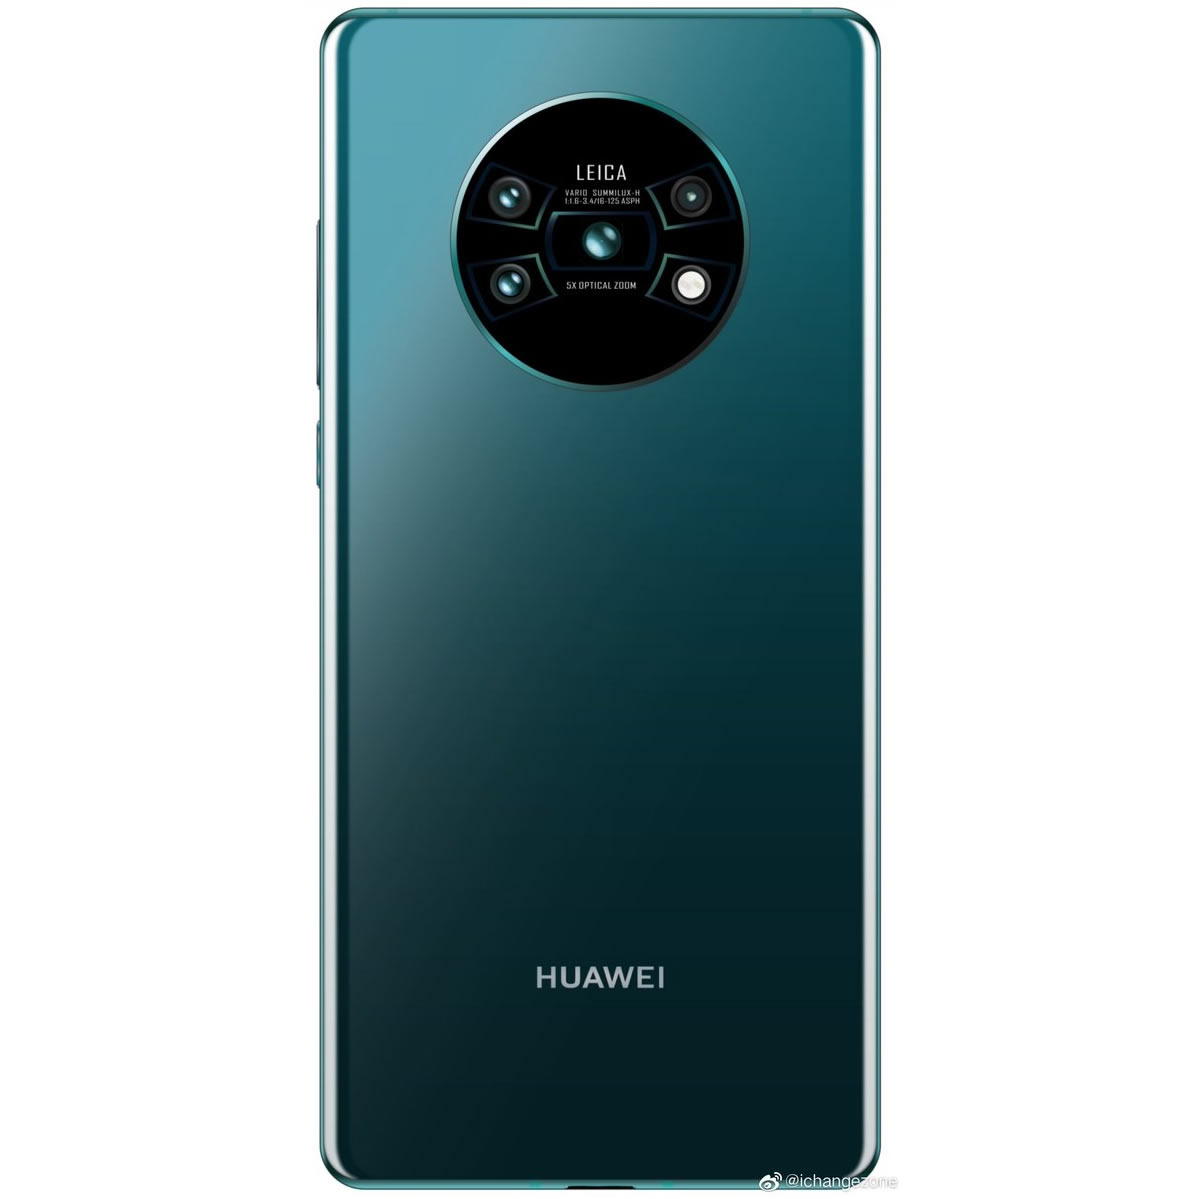 Amiral gemisi Huawei Mate 30 Pro'nun kamera tasarımı ortaya çıktı